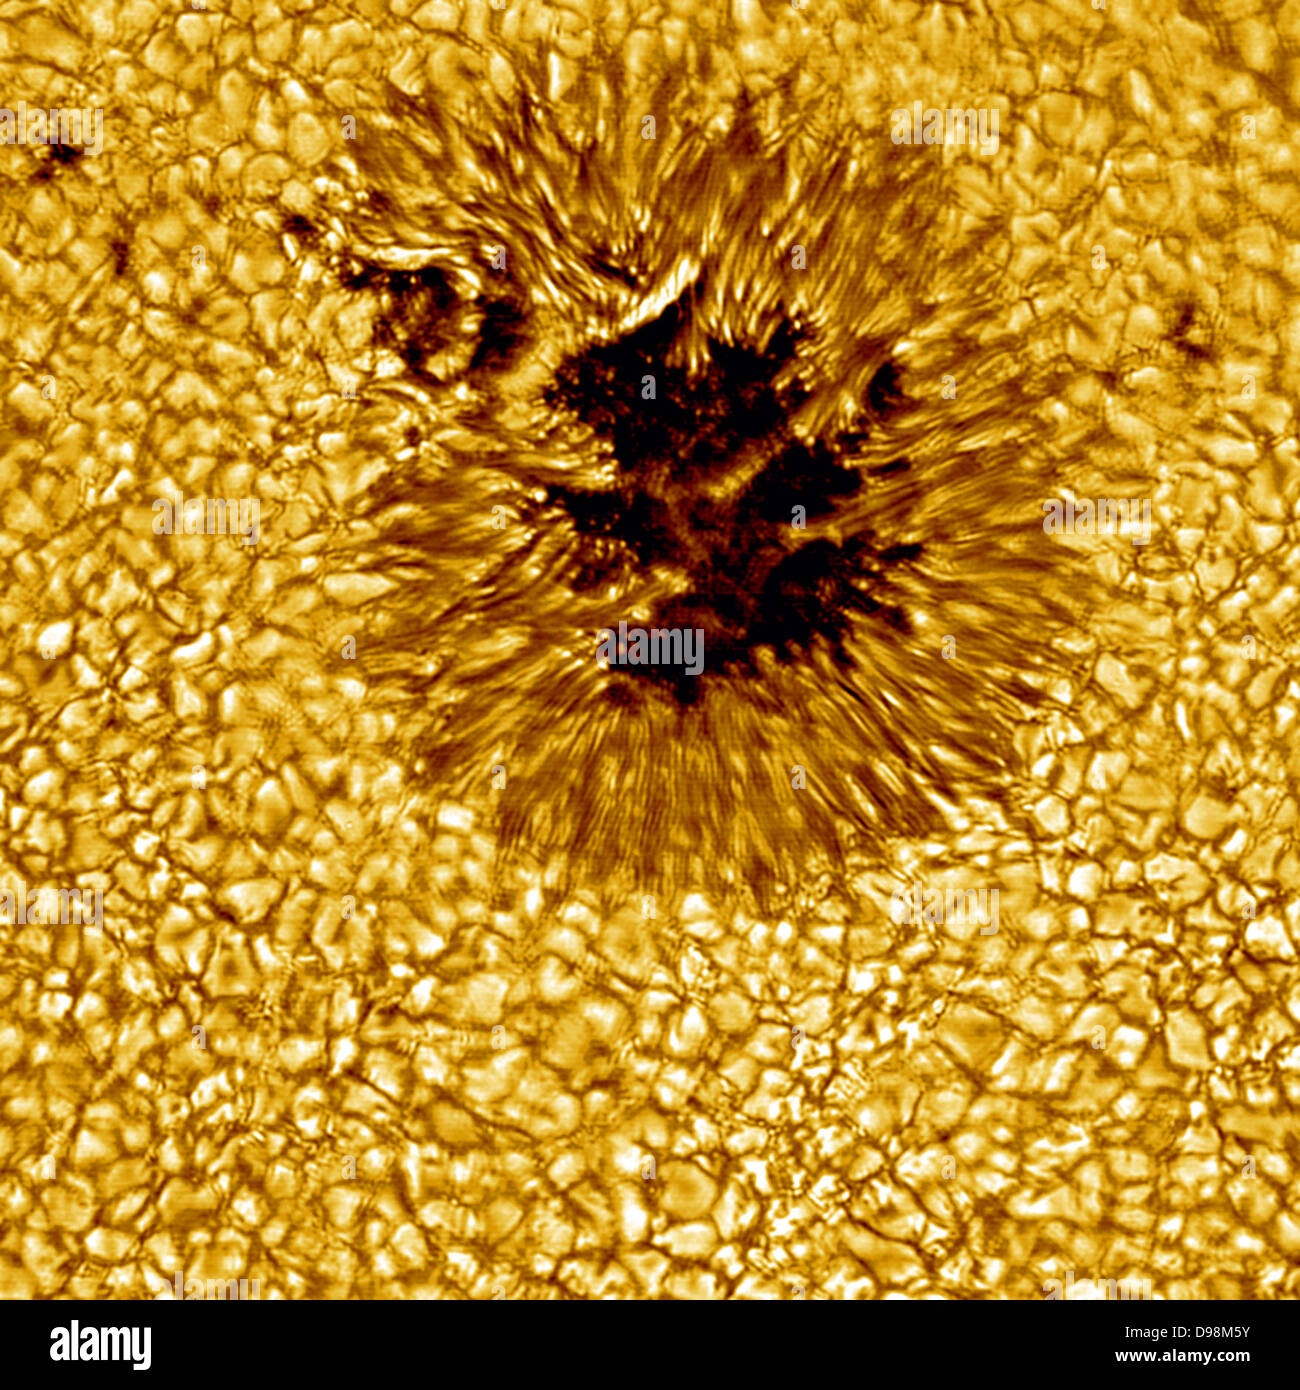 Sonnenfleck aus der Nähe. Komplexe Magnetfeld der Sonne erzeugt diese Cool Region durch Hemmung heißes Material in den Ort. Sonnenflecken kann größer als die Erde und in der Regel nur für ein paar Tage. Dieser hochauflösende Bild zeigt auch deutlich, dass das Gesicht der Sonne ist eine brodelnde Meer von separaten Zellen der heißes Gas. Diese Zellen sind als Granulat bekannt. Eine solare Granulat ist über 1000 Kilometer und dauert etwa 10 Minuten. Nach diesem, viele Granulat am Ende explodiert. Stockfoto